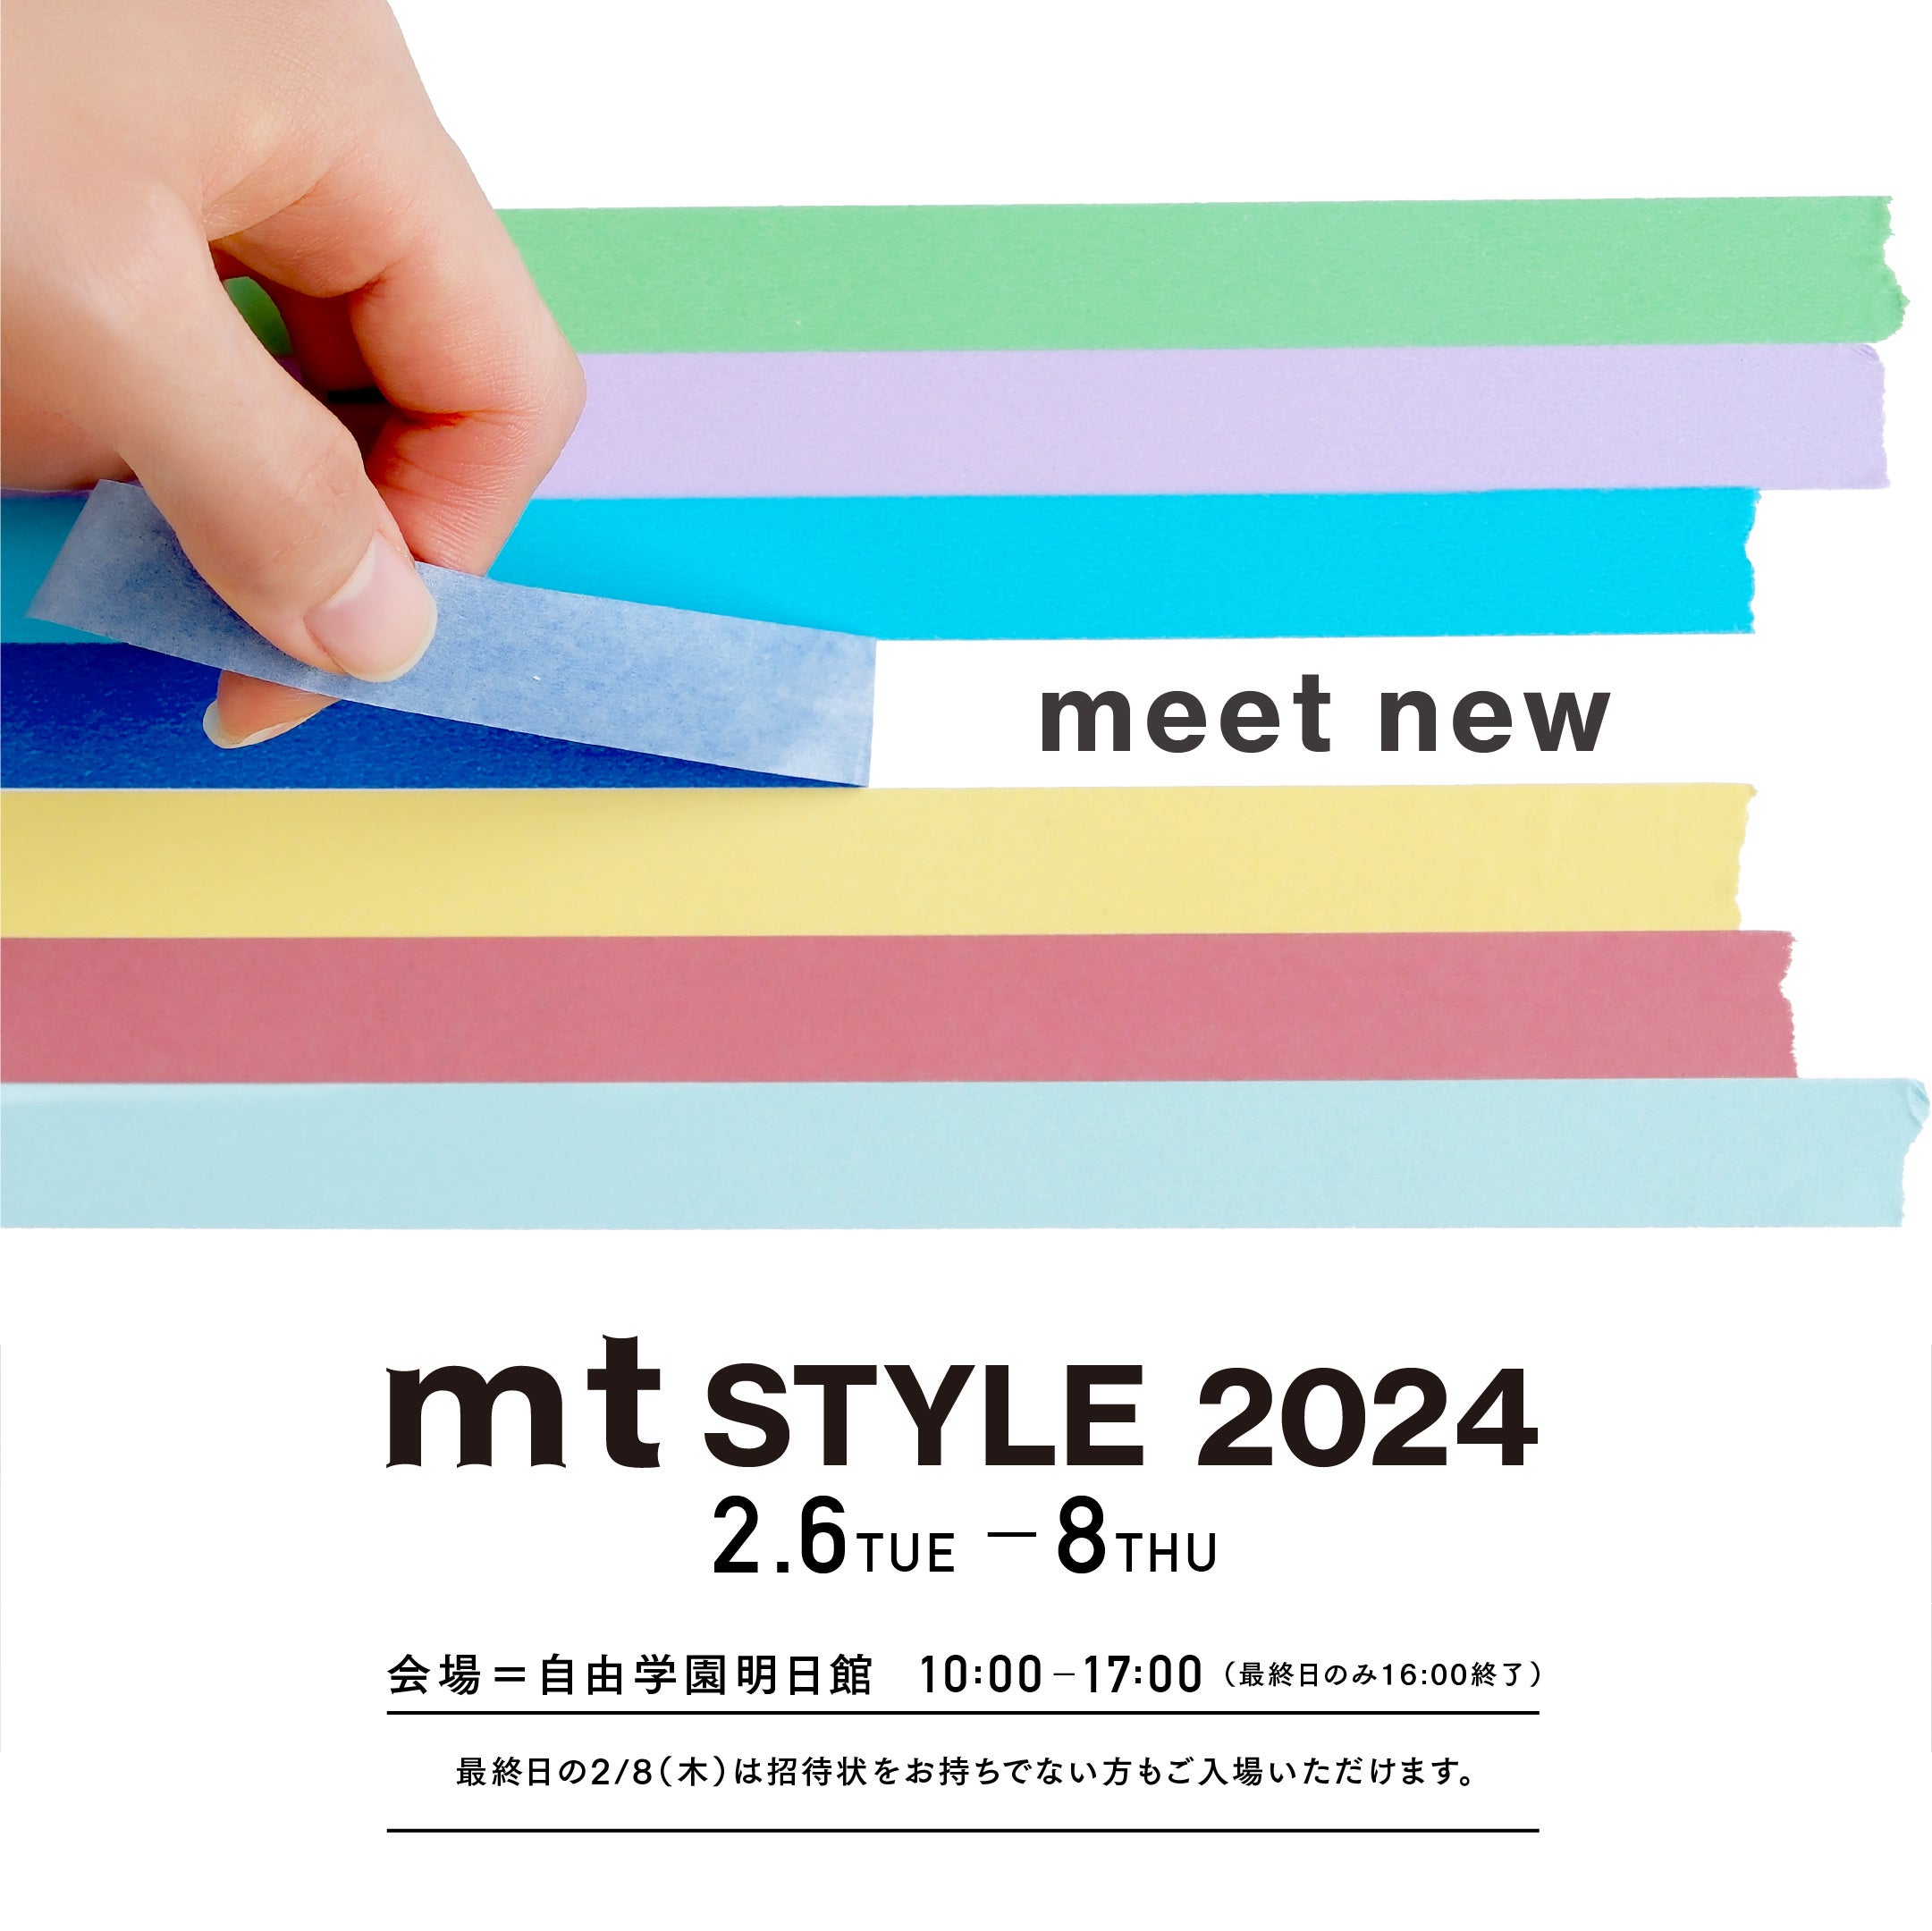 次の100年、そして原点へ。mt masking tape新商品展示会「mt style